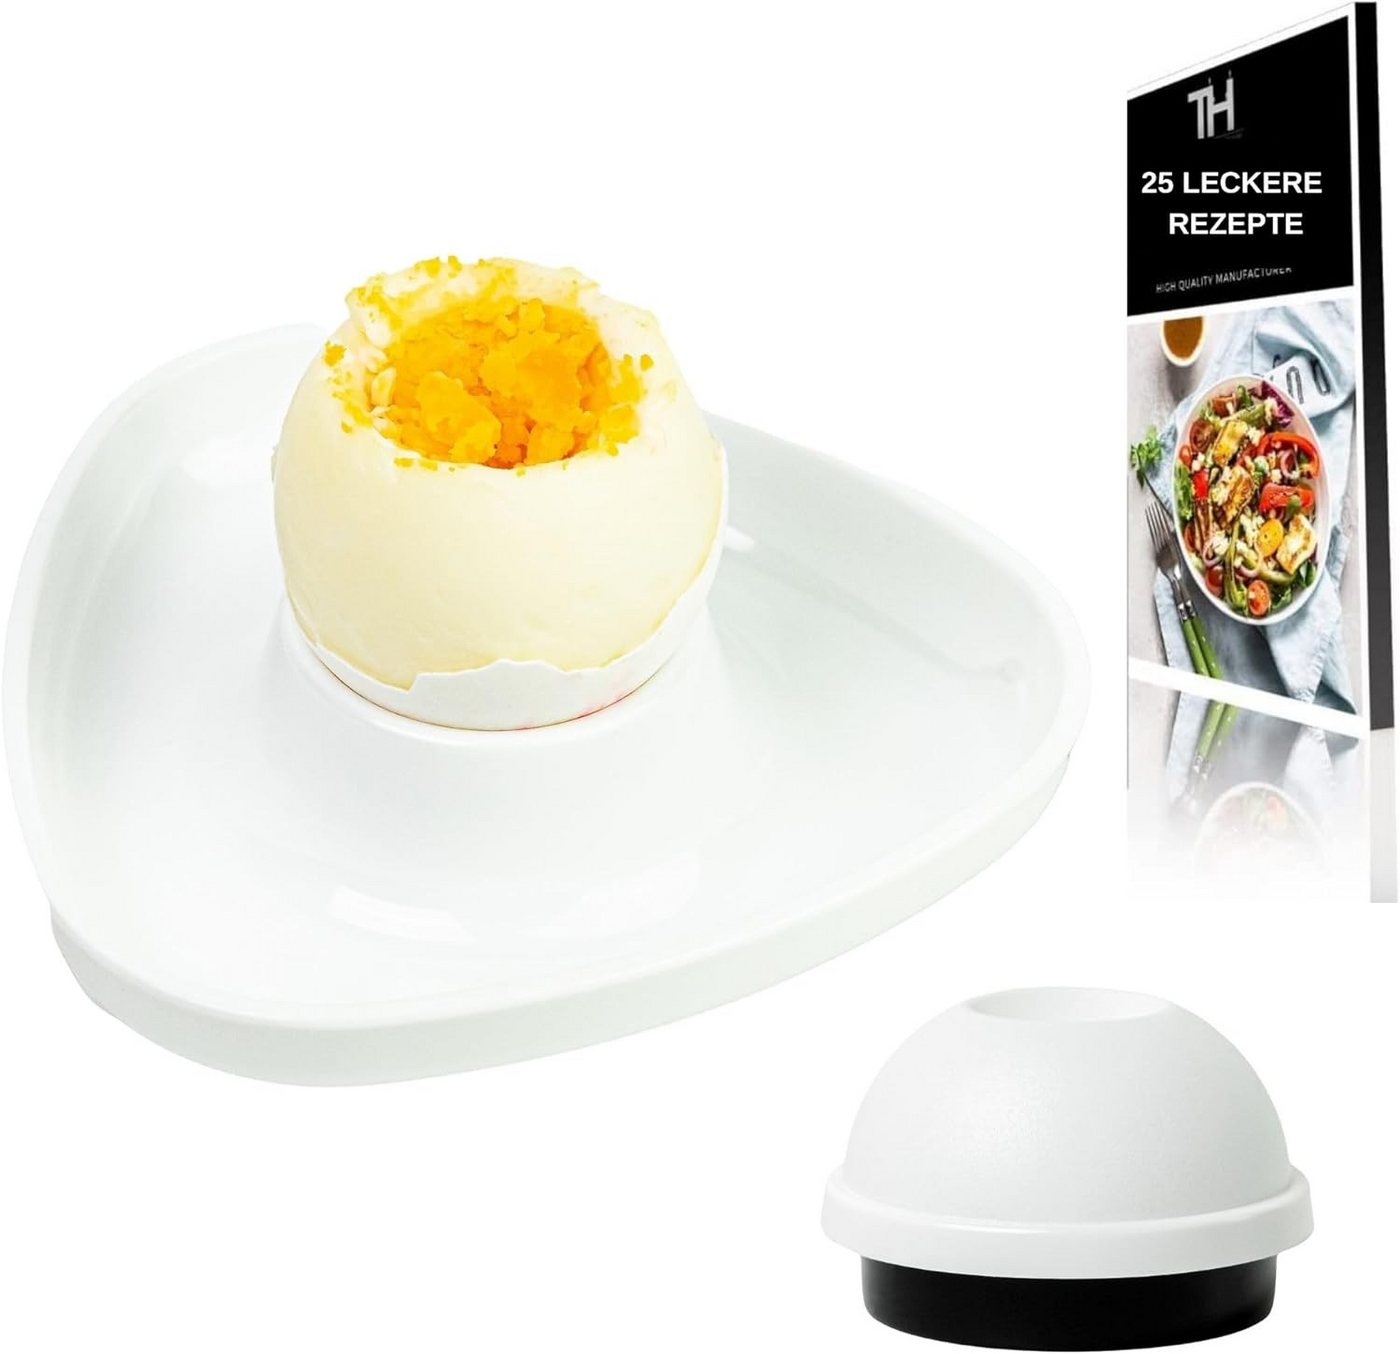 Thiru Eierbecher Weiß Premium Stapelbar inkl. Eidorn im 6er Set, BPA frei, inklusive Eidorn, mit Ablage, 6er Set, stapelbar von Thiru